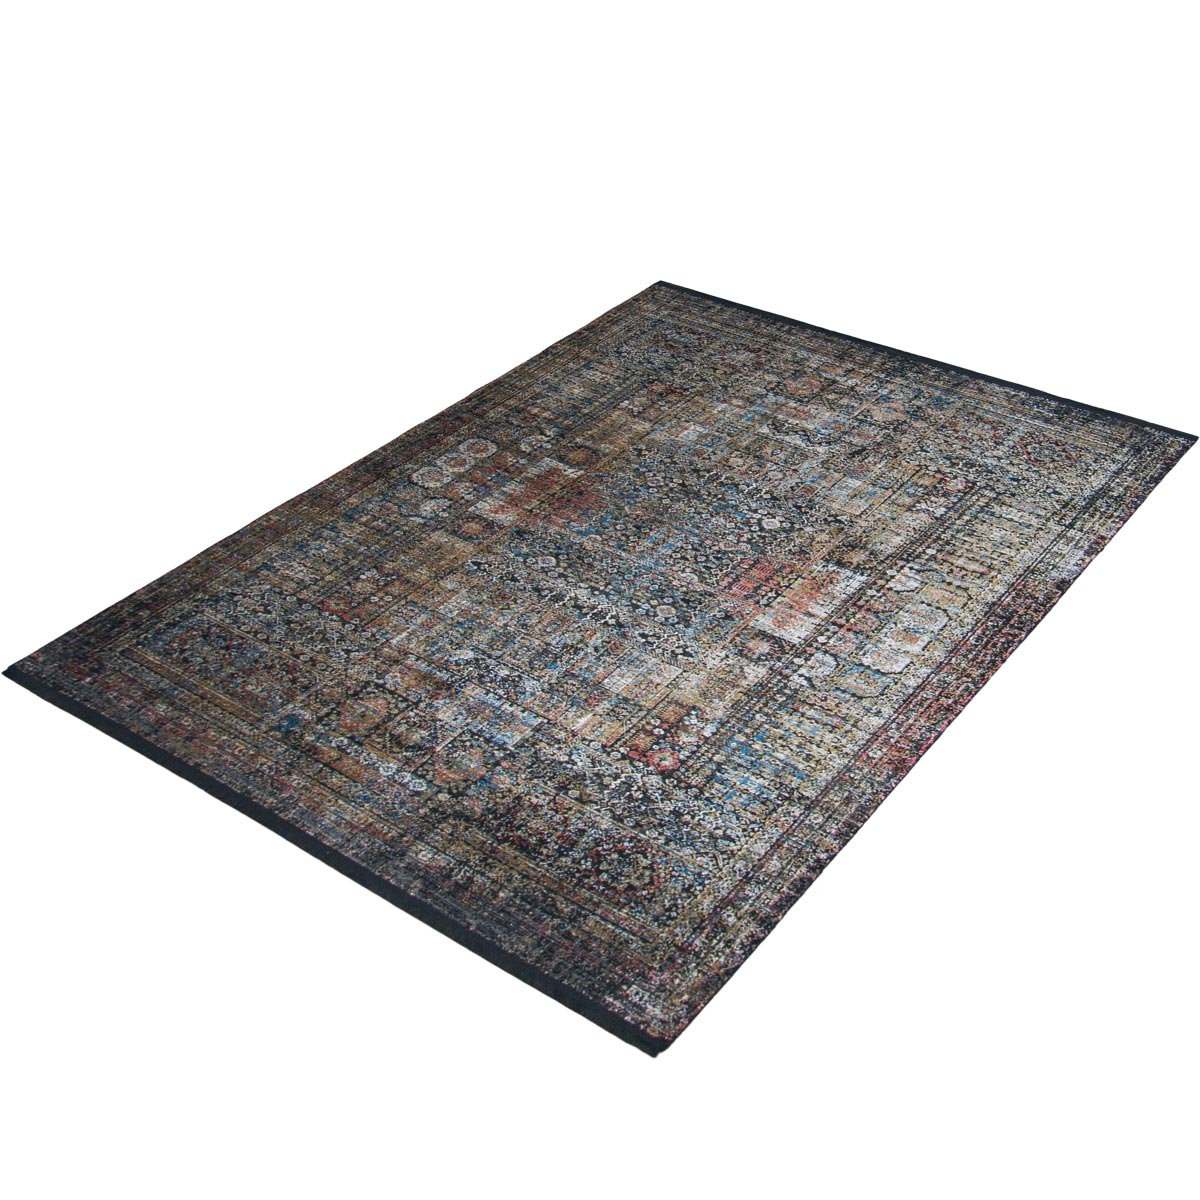 שטיח אלכסנדריה 02 צבעוני עם פרנזים | השטיח האדום